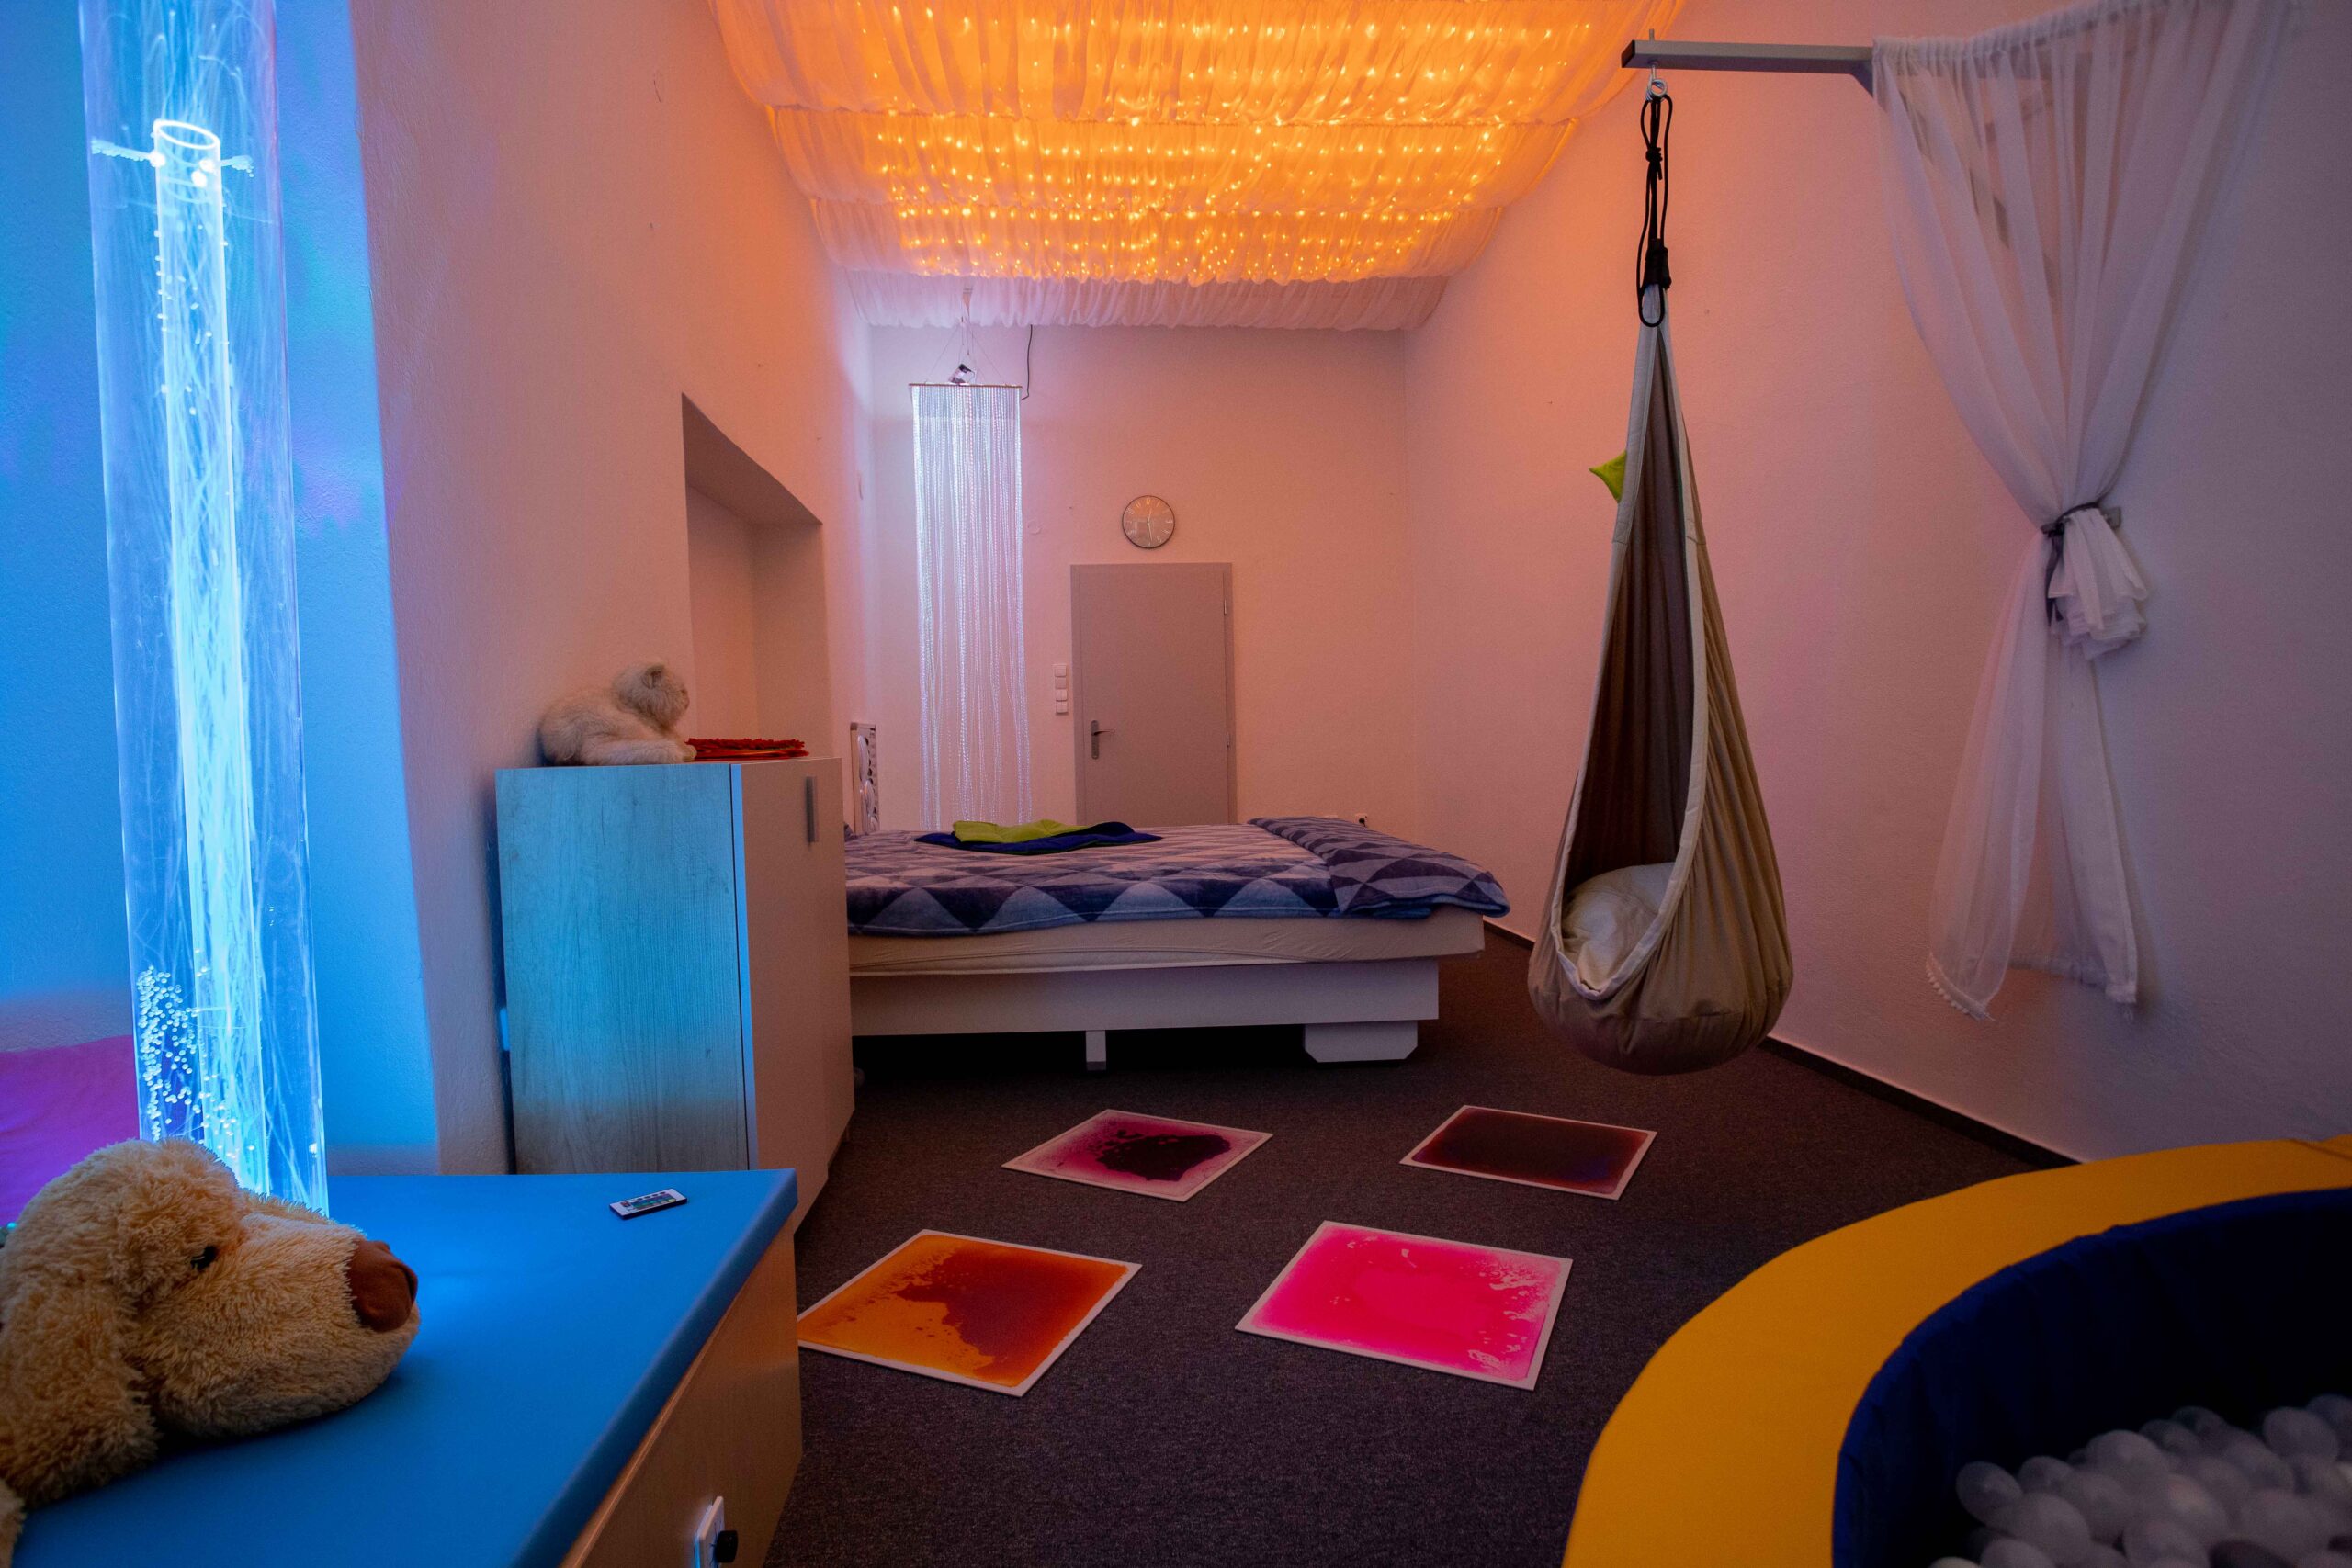 Relaxační místnost v Centru denních služeb pro lidi s autismem v Olomouci